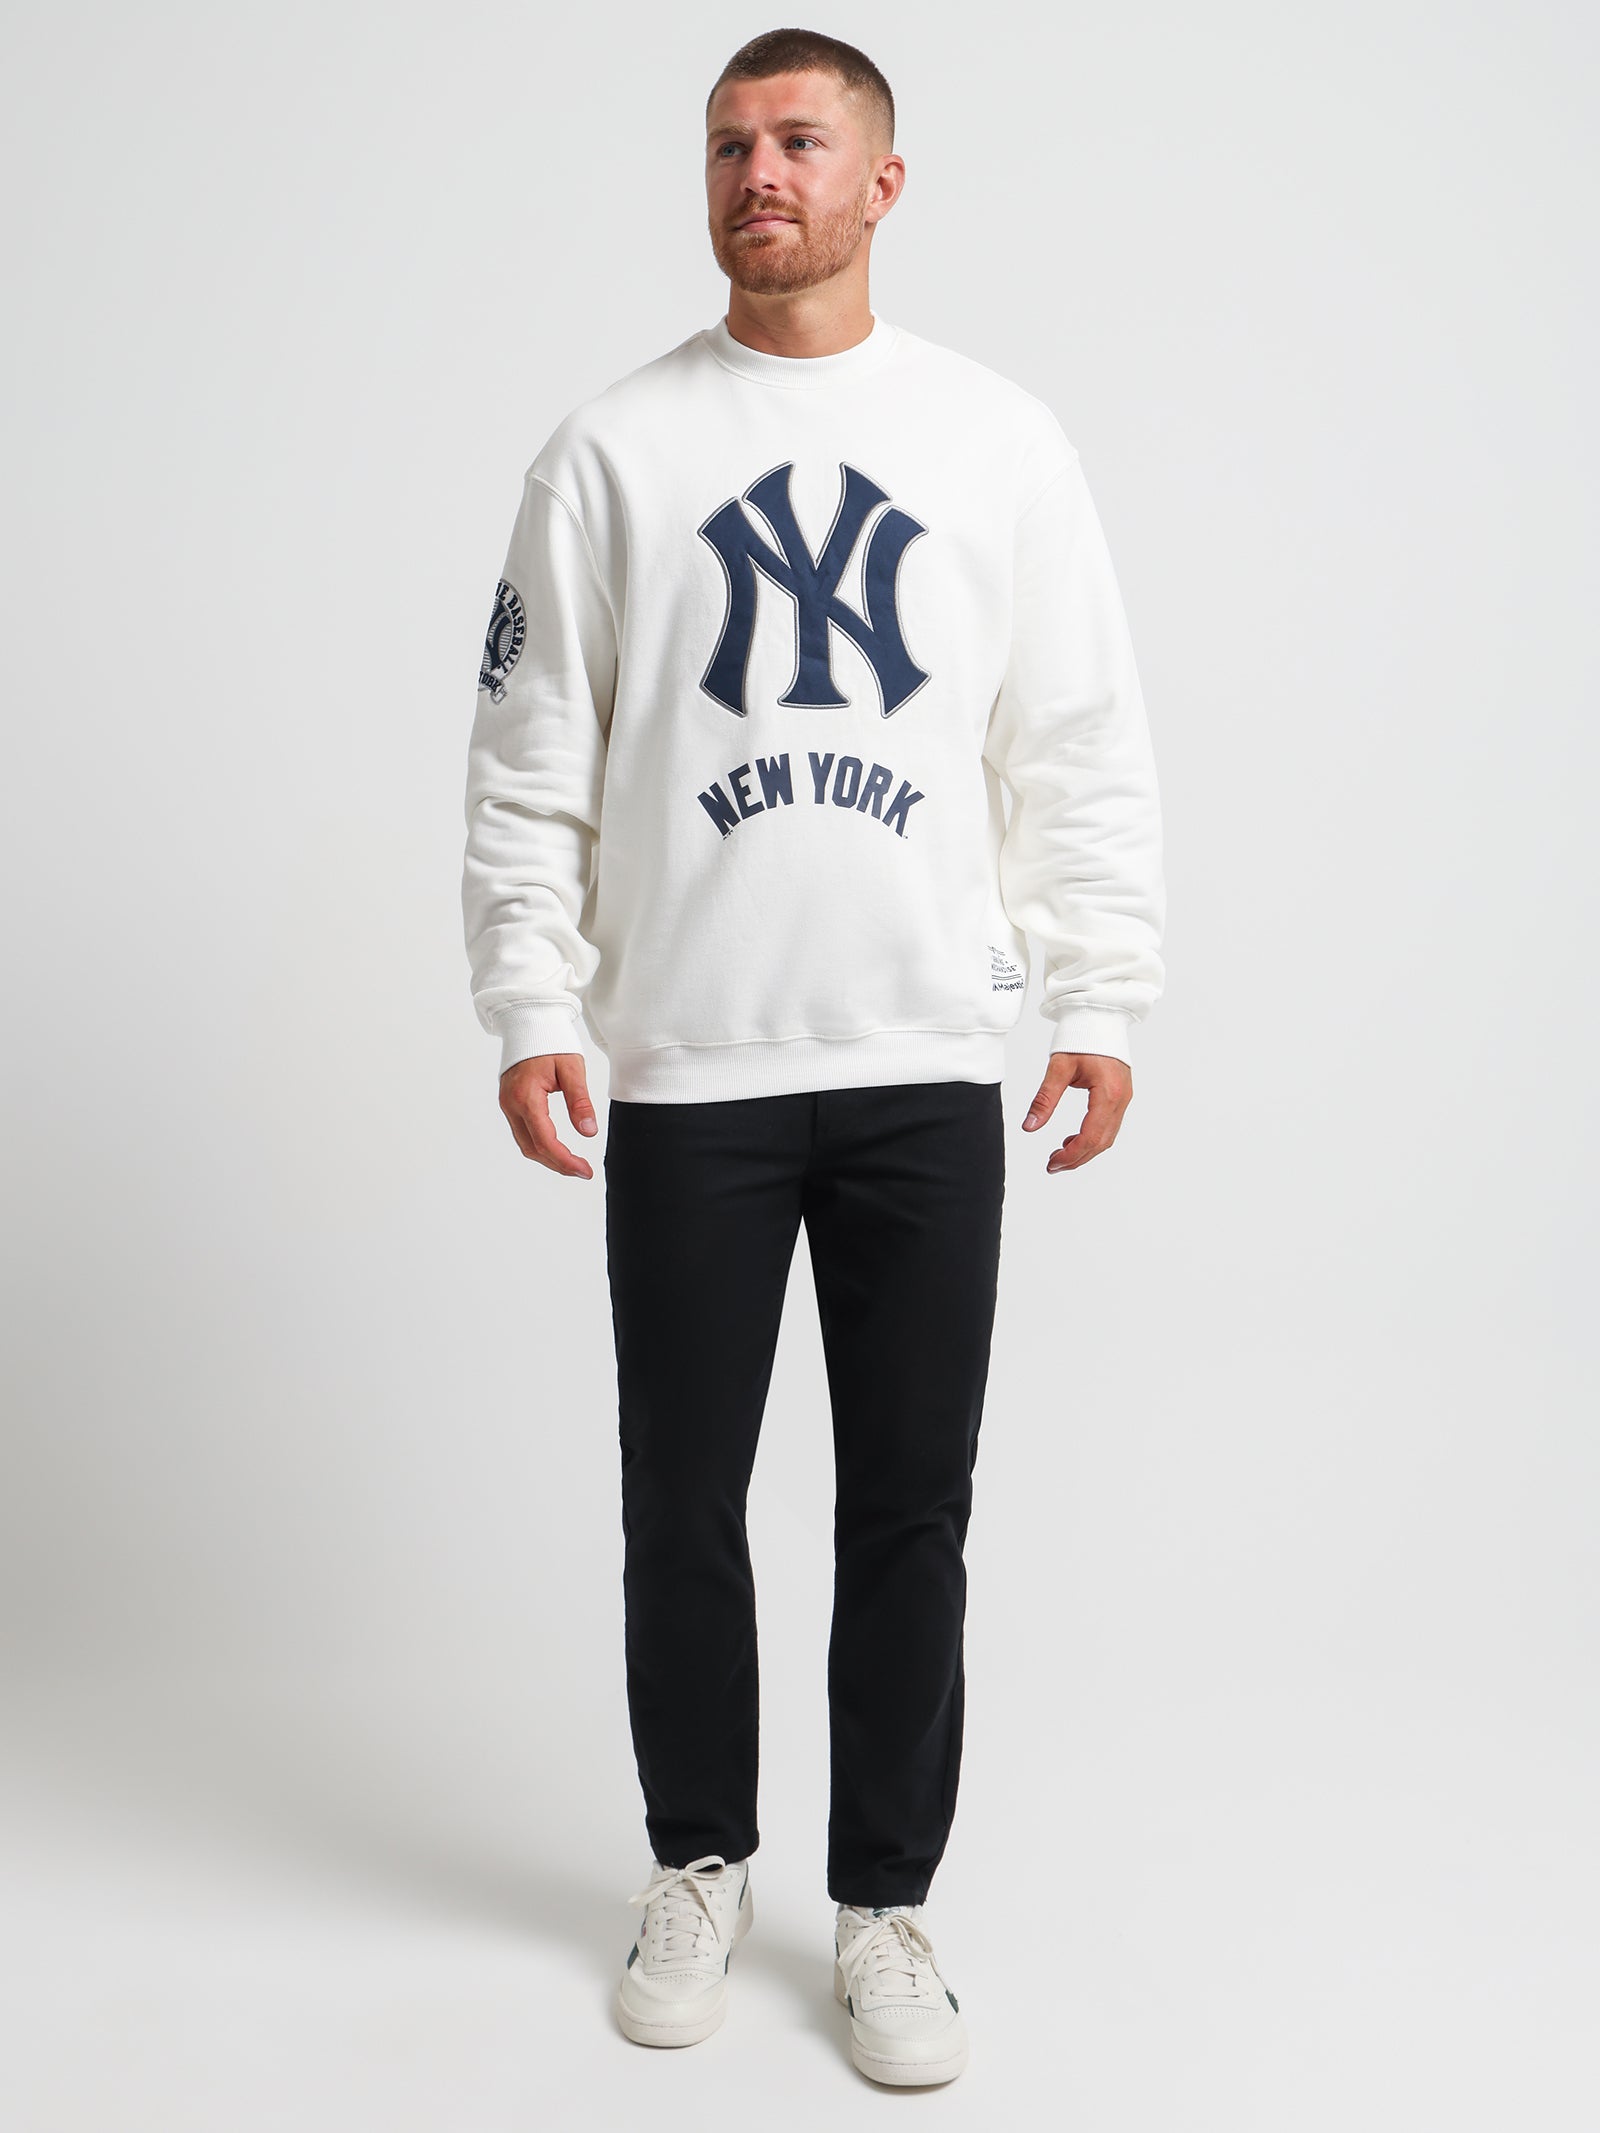 Vintage New York Yankees Crewneck Sweatshirt at